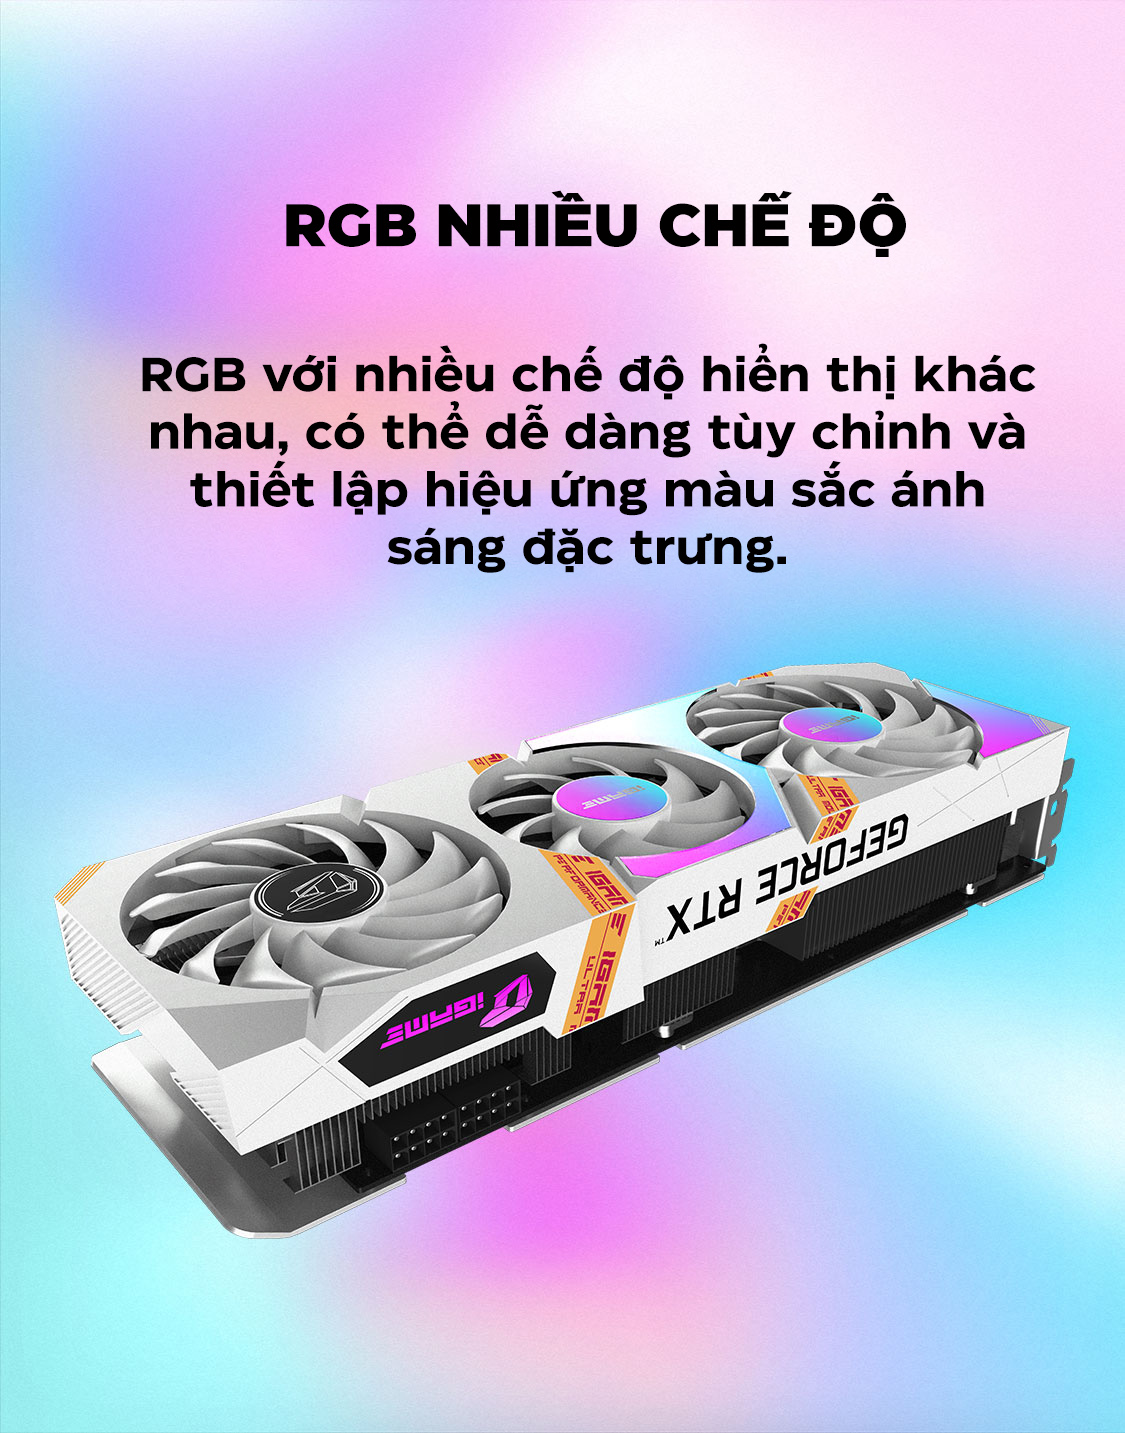 Card màn hình Colorful RTX 3050 iGame Ultra W OC 8G-V